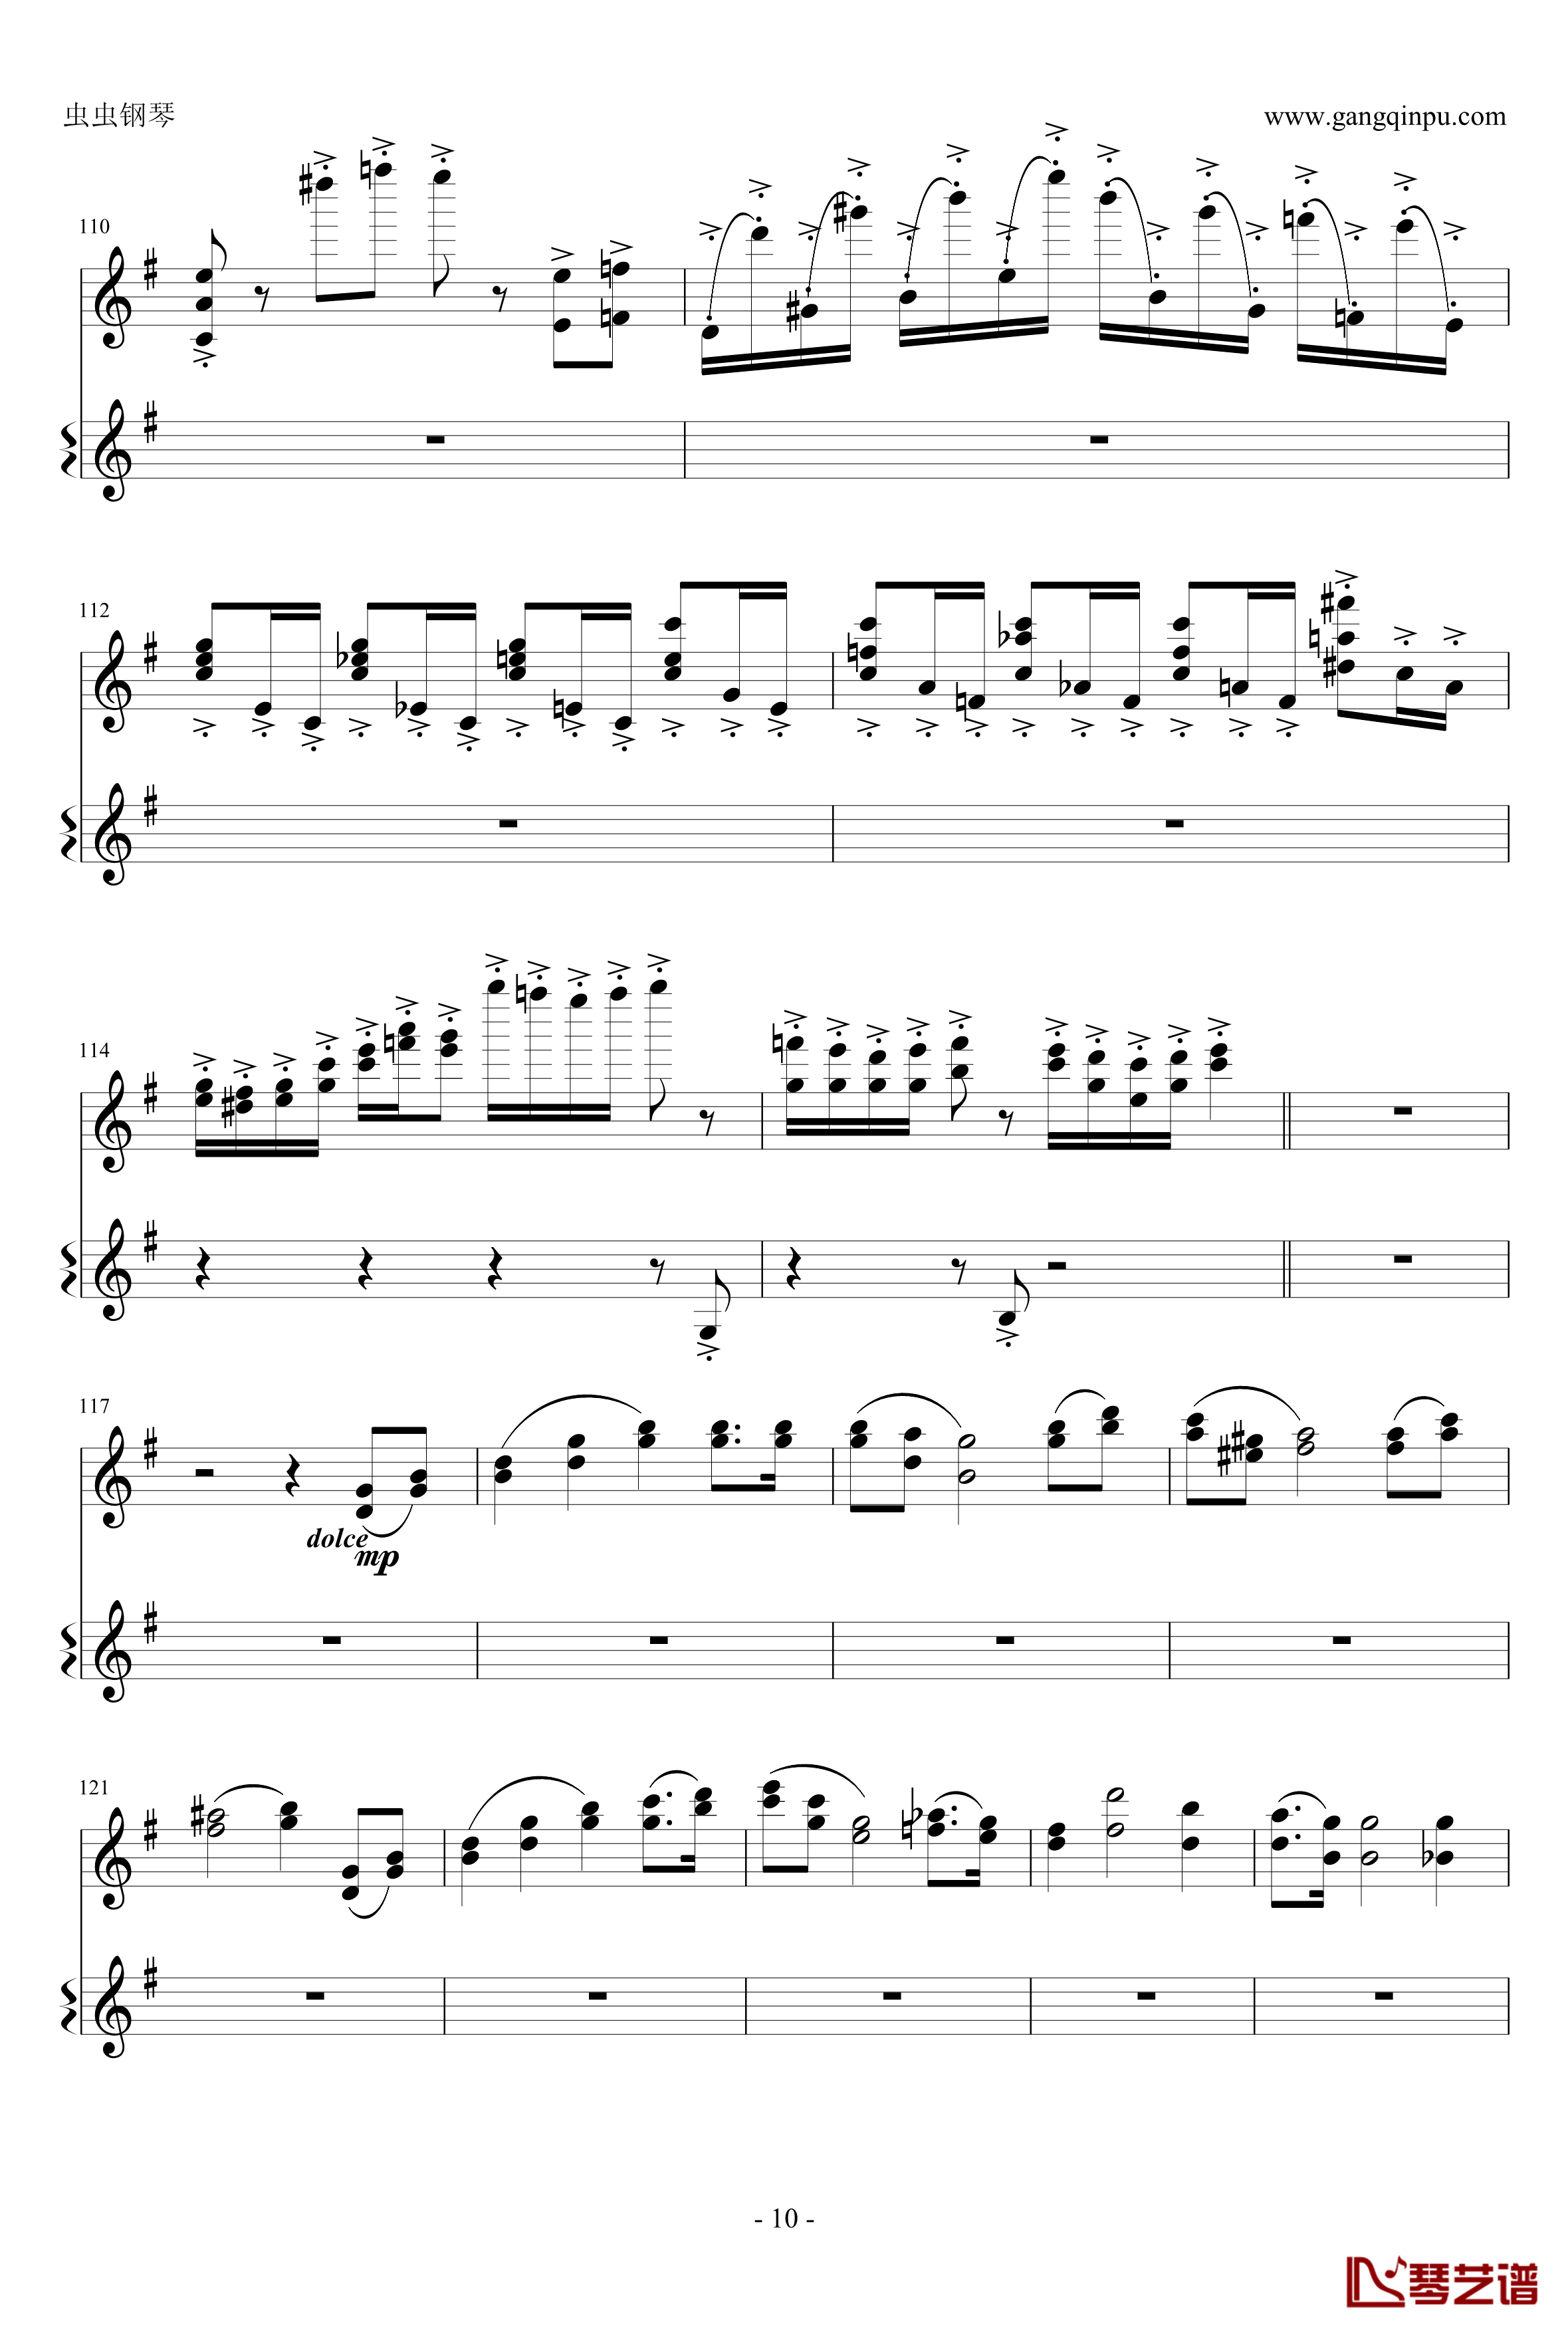 意大利国歌钢琴谱-变奏曲修改版-DXF10